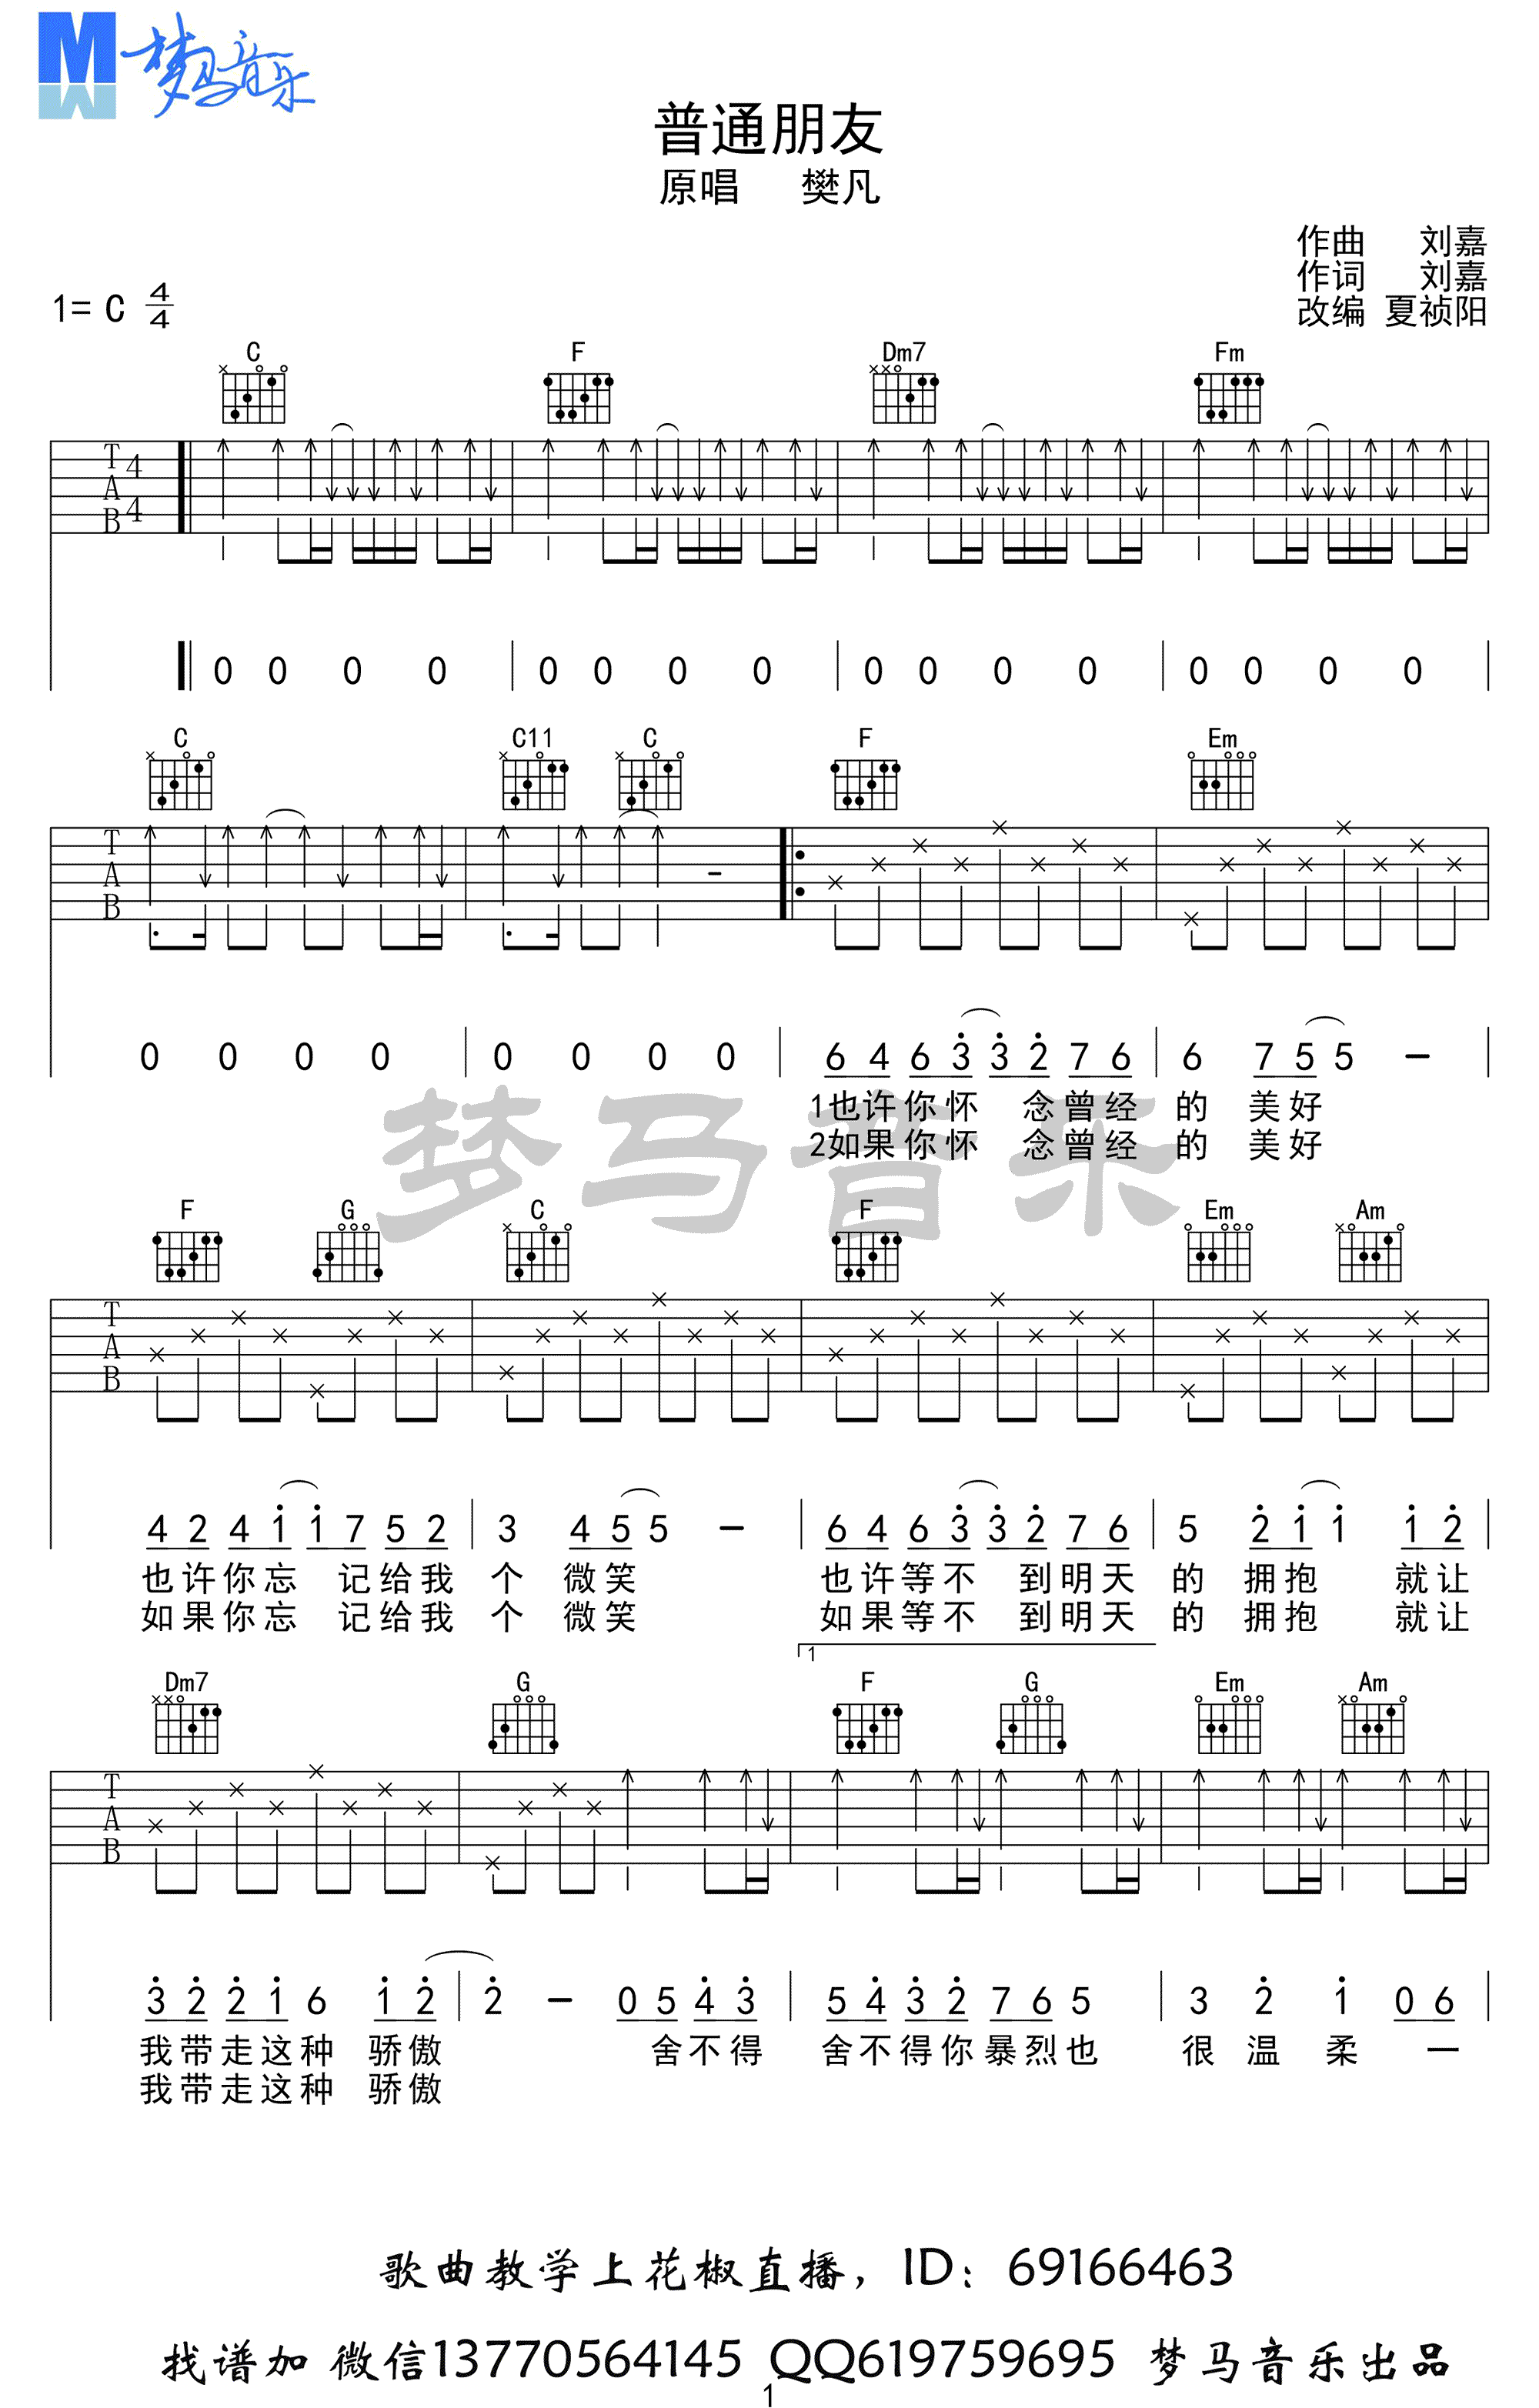 有哪些吉他手常用的吉他谱（GTP谱）下载网站？-Guitar Pro中文网站